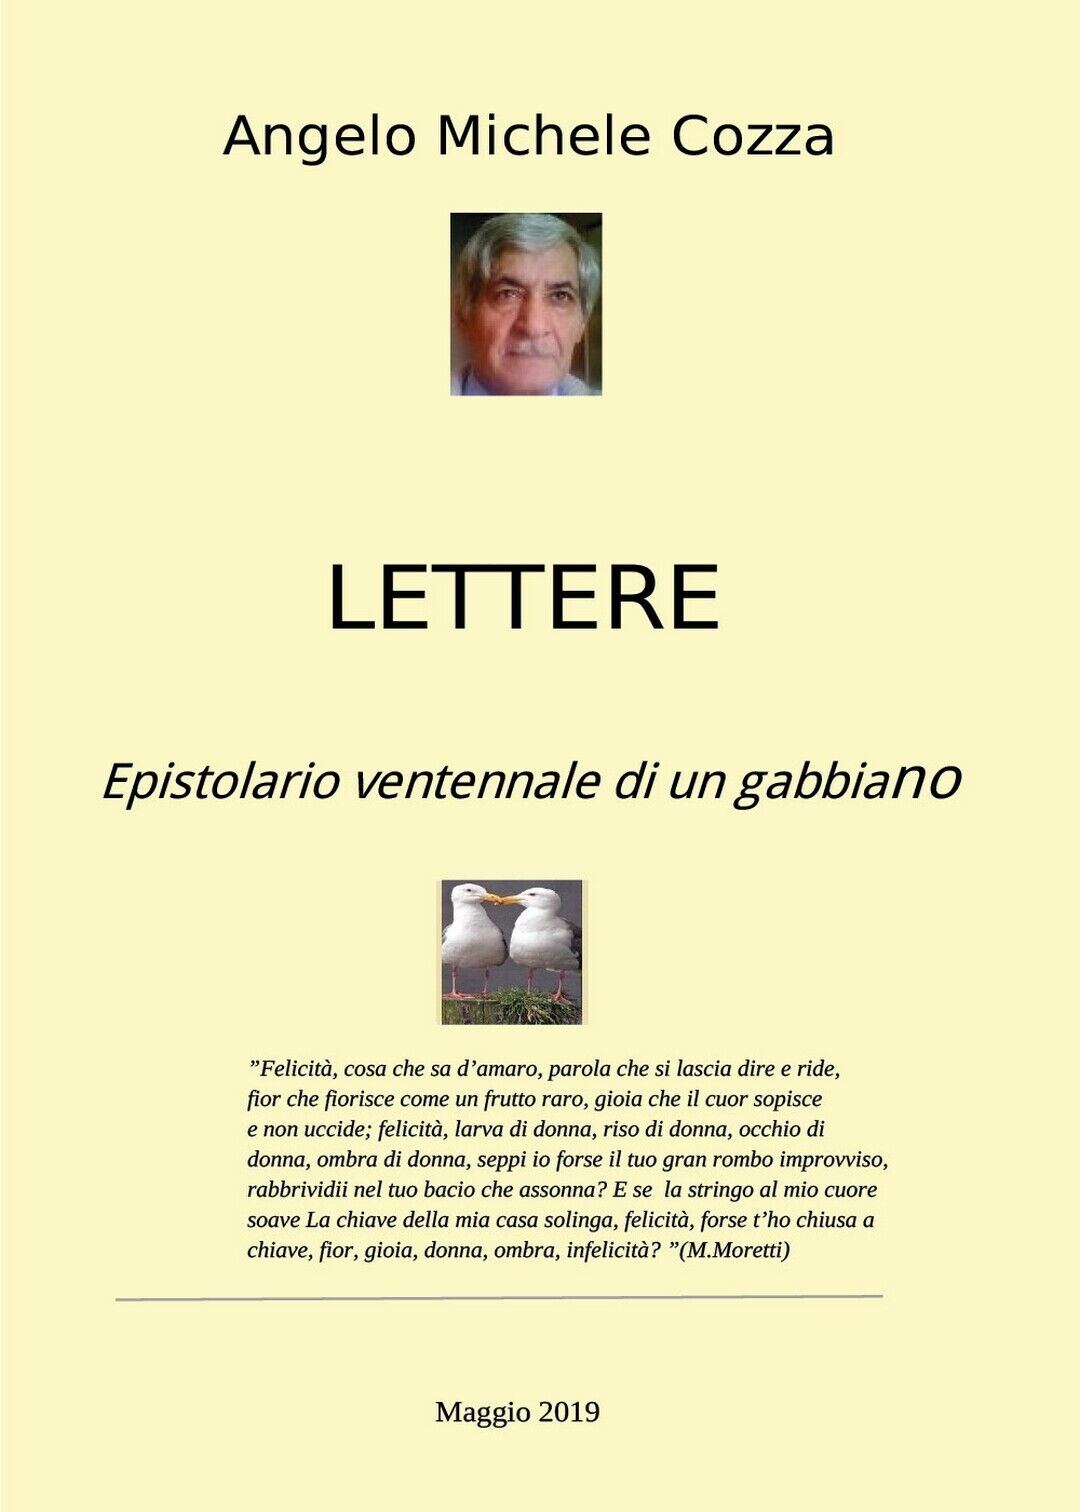 Lettere Epistolario ventennale di un gabbiano  di Angelo Michele Cozza,  2019  